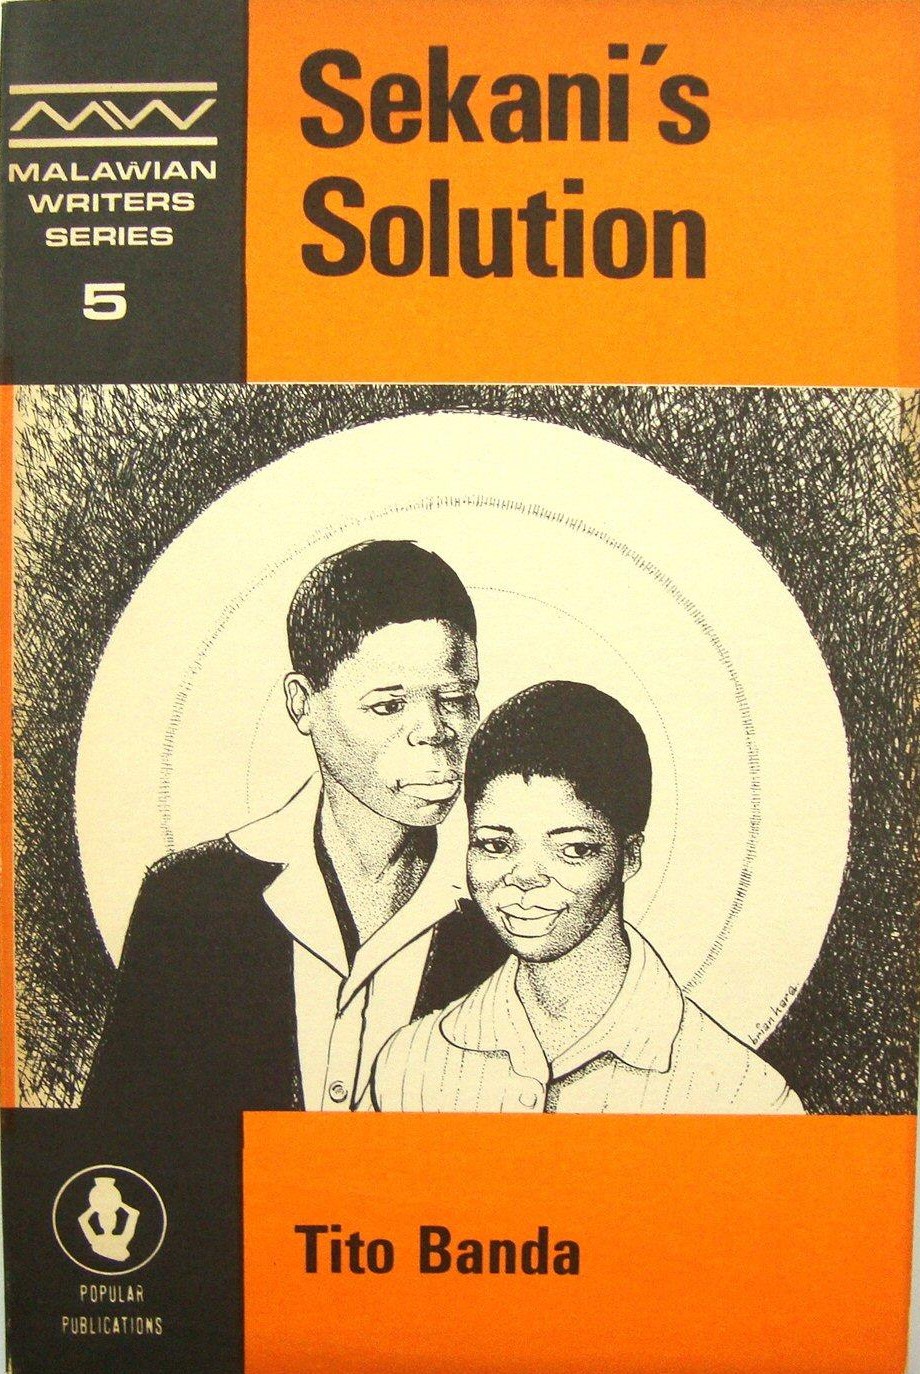 Sekani's Solution by Tito Banda (image)